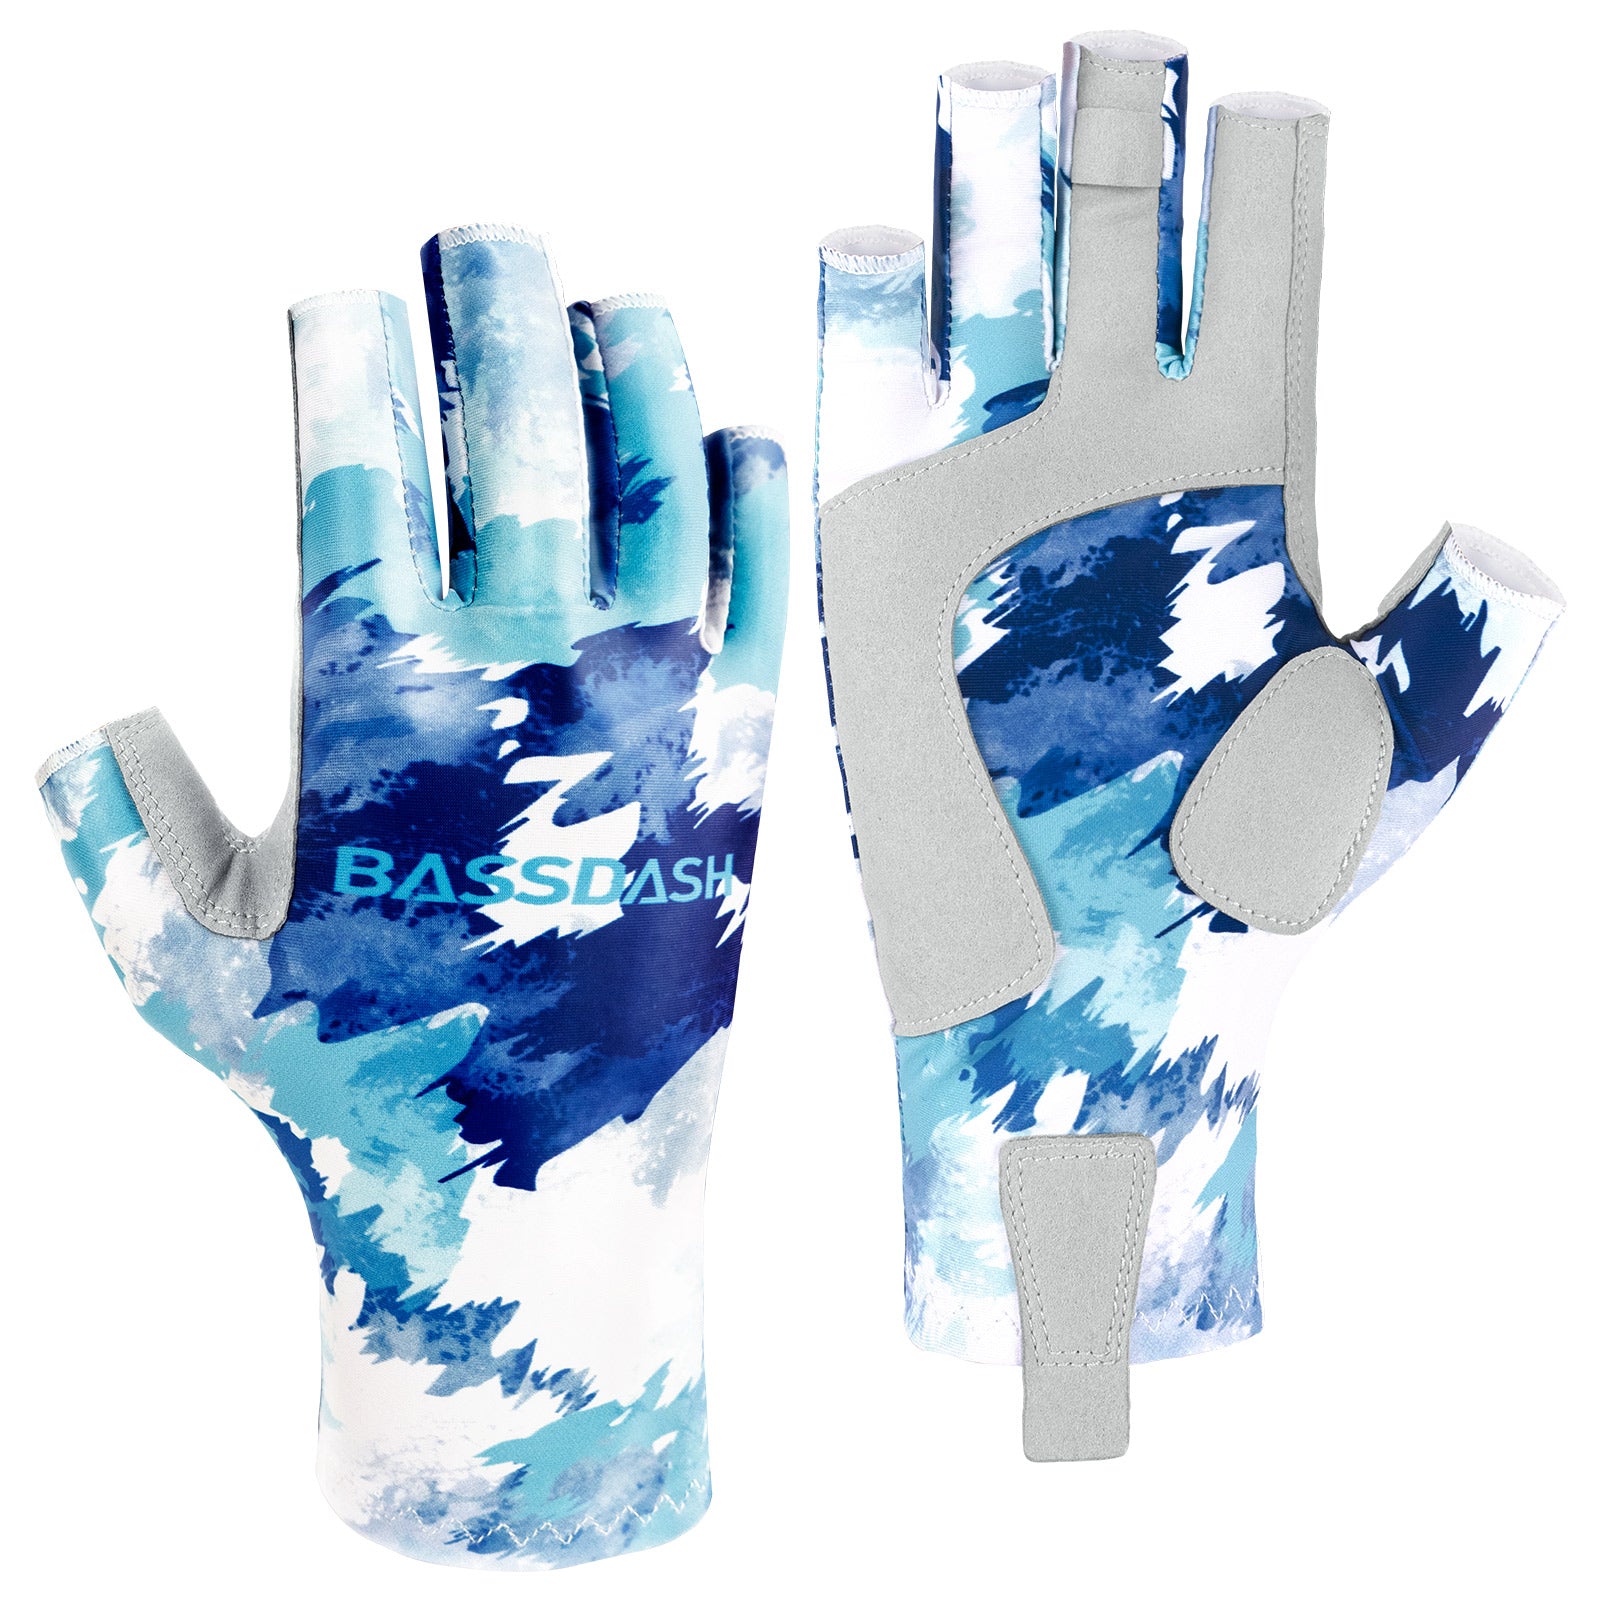 Ylshrf Uv Protection Gloves, Sun Gloves 2 Finger Cut For Outdoor Sports For Fishing